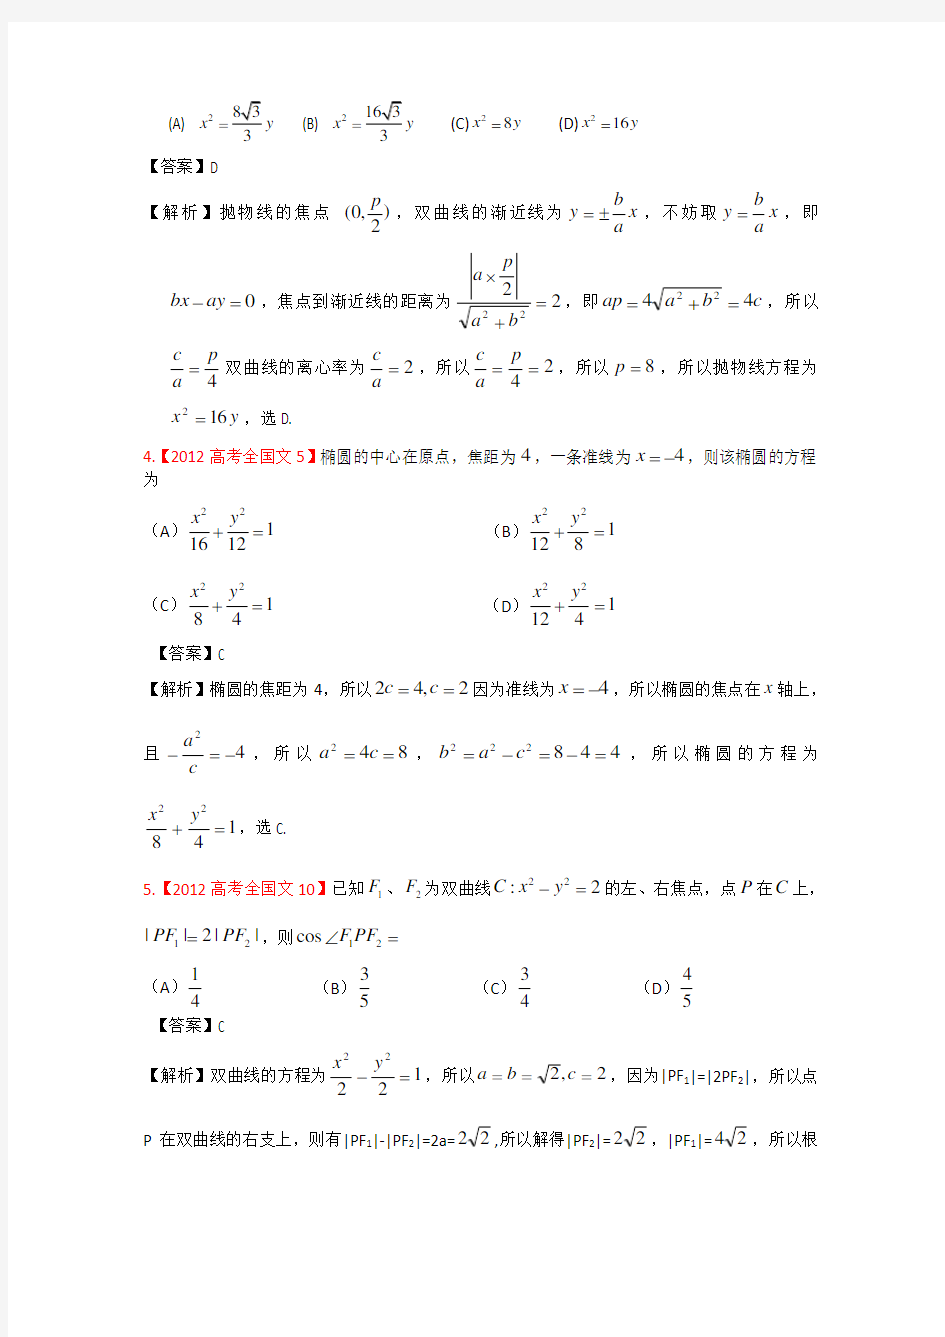 2012年高考真题汇编——文科数学(解析版)8：圆锥曲线